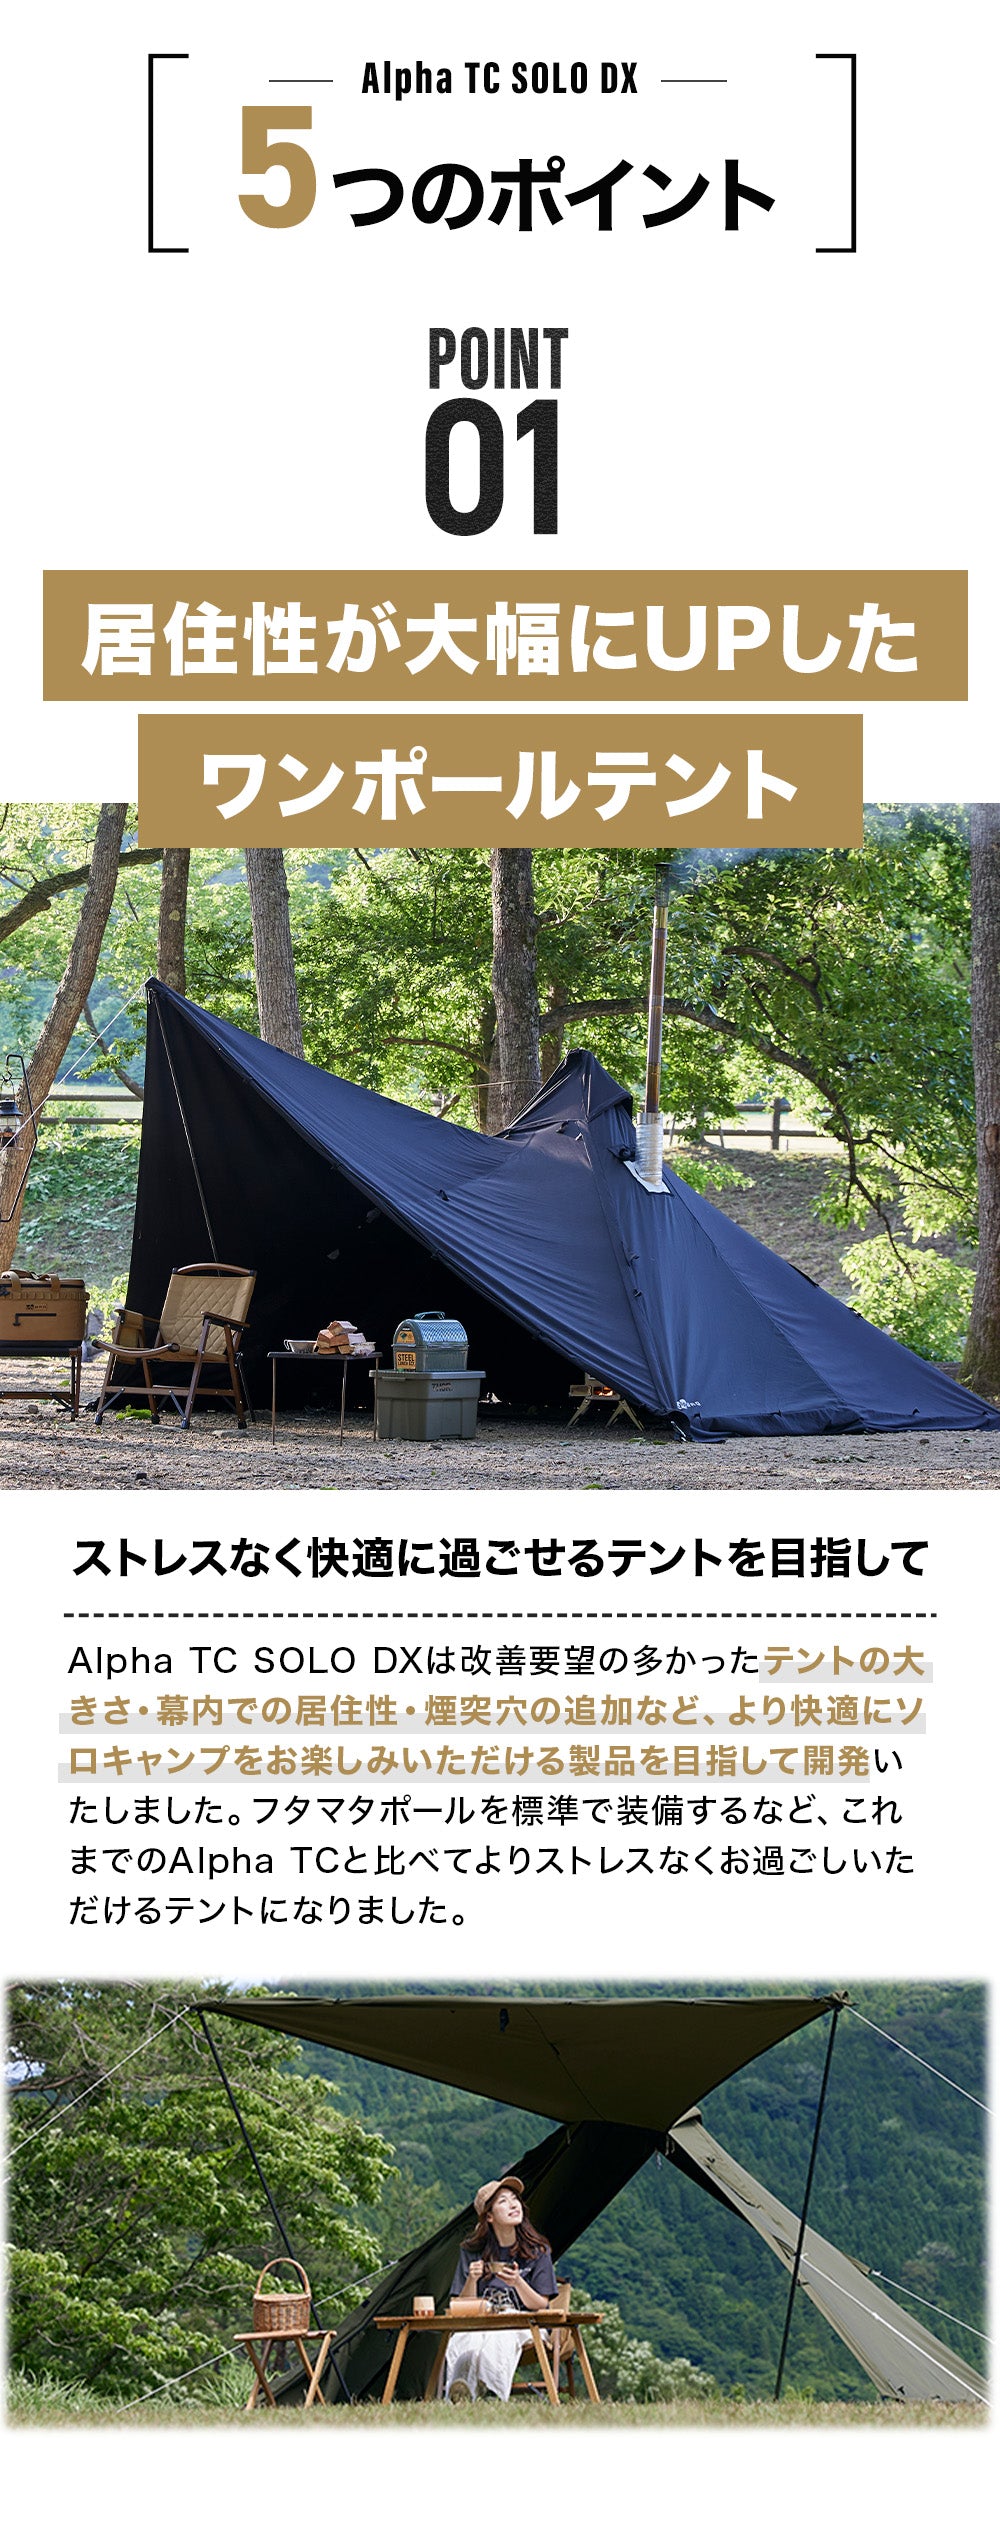 WAQ Alpha T/C SOLO DX ソロ〜デュオ用 ティピテント【送料無料・1年保証】